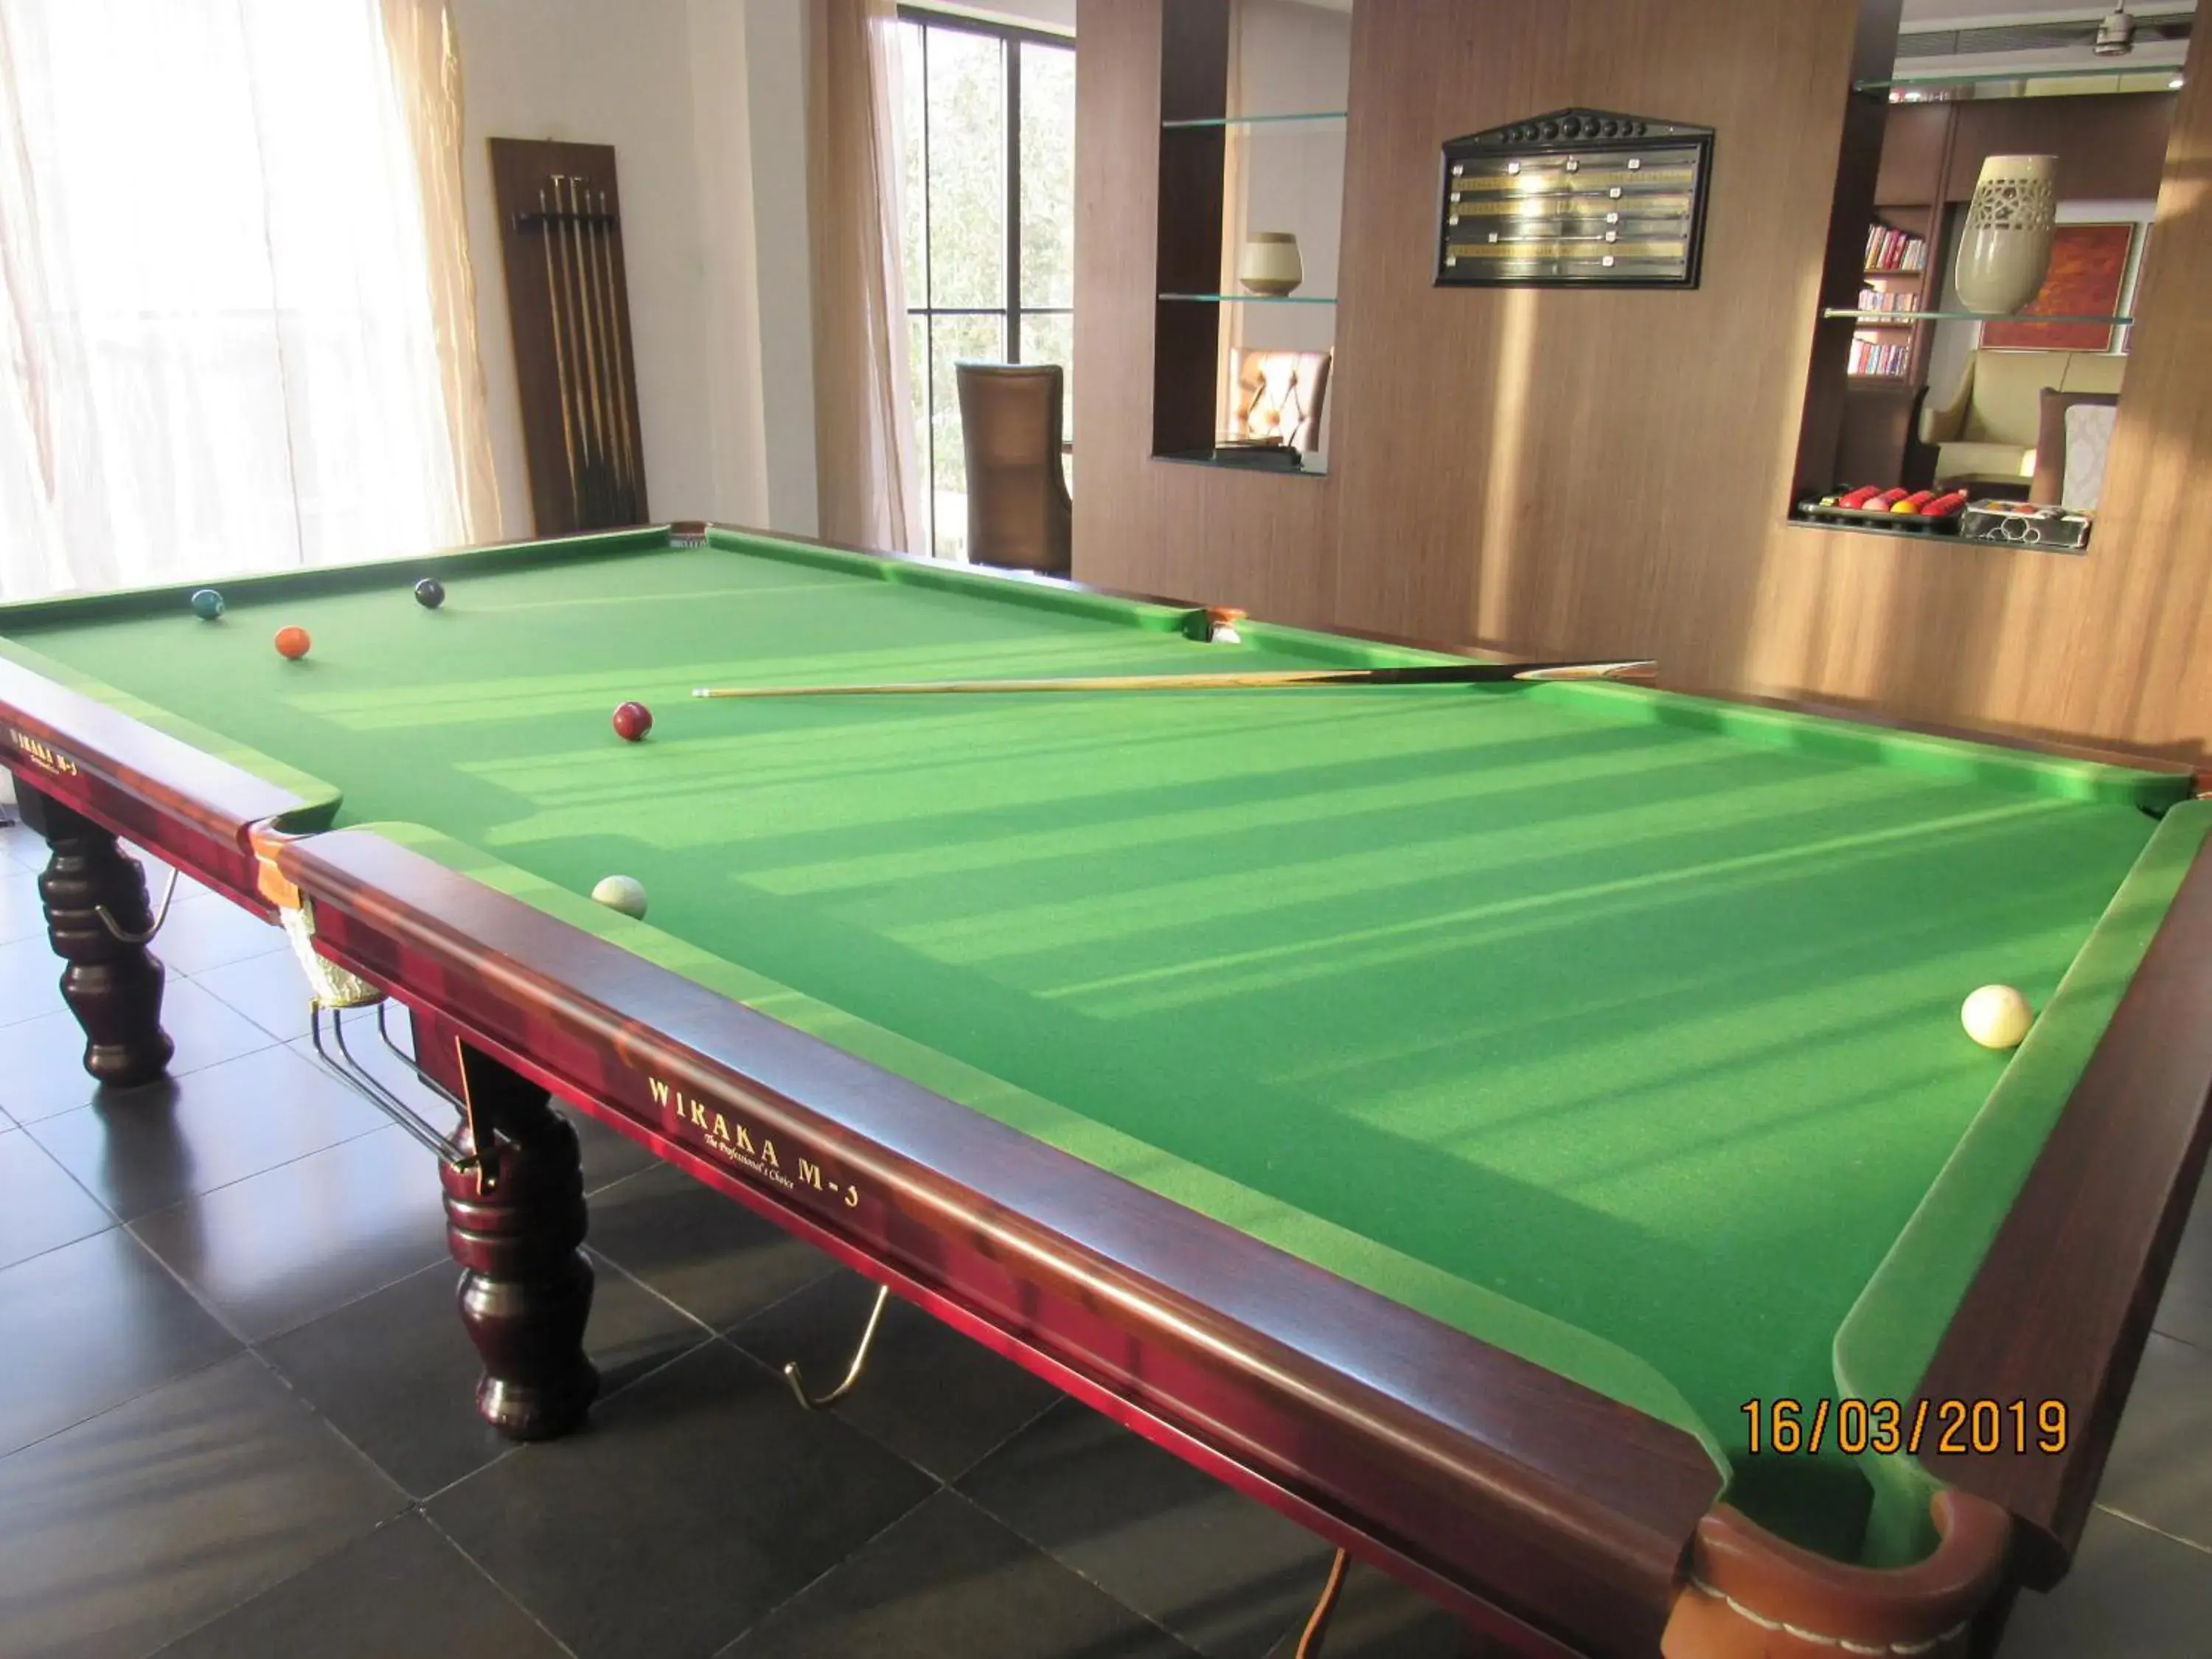 Game Room, Billiards in Oxford Golf Resort